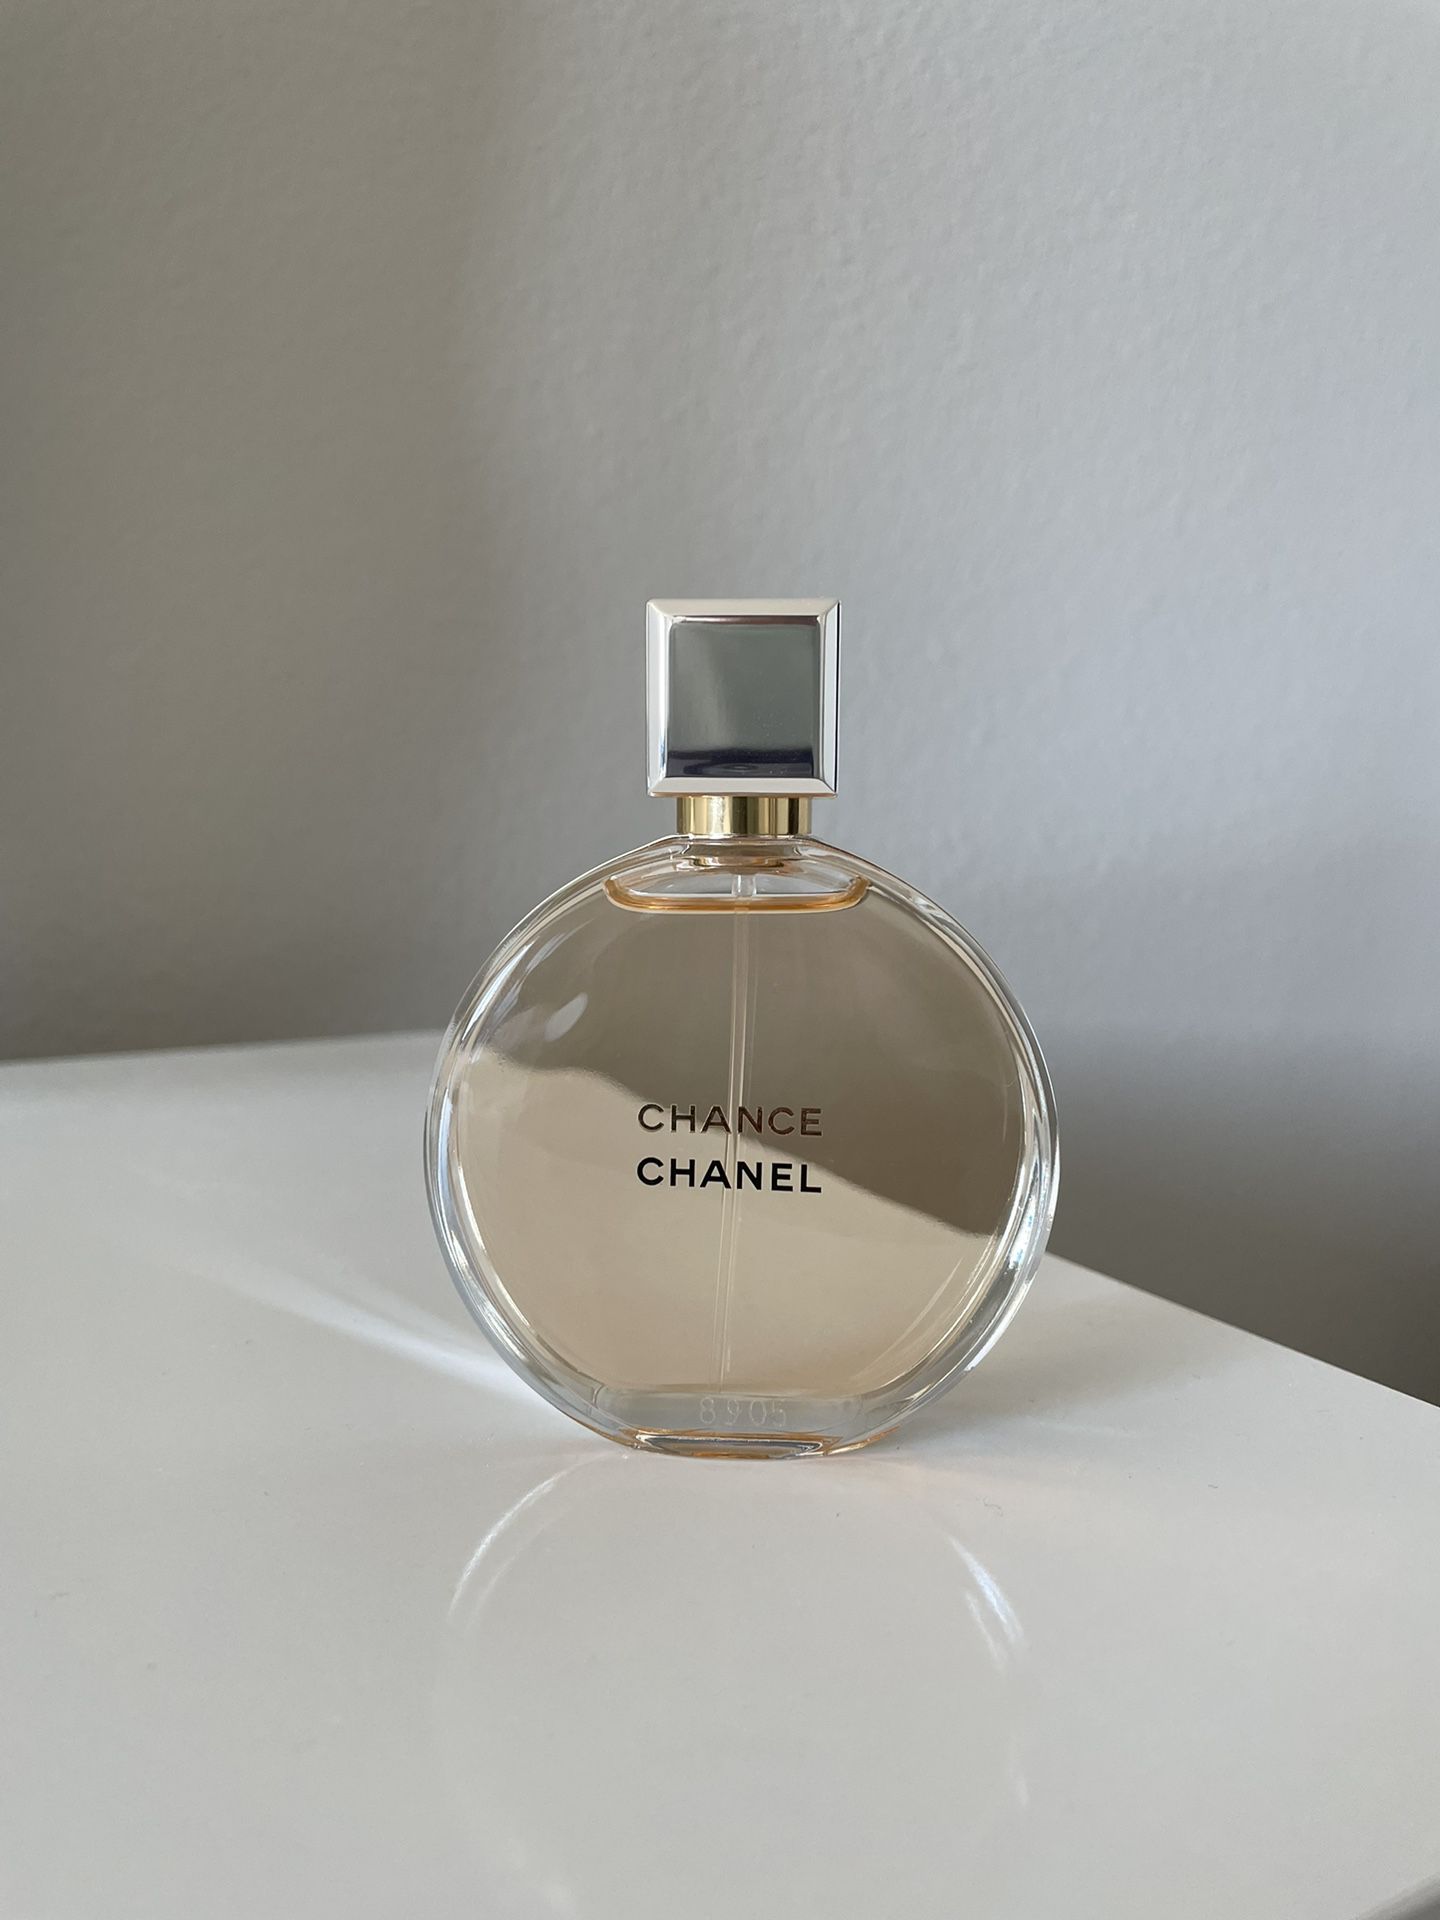 Chanel Chance 1.7 oz Woman Perfume